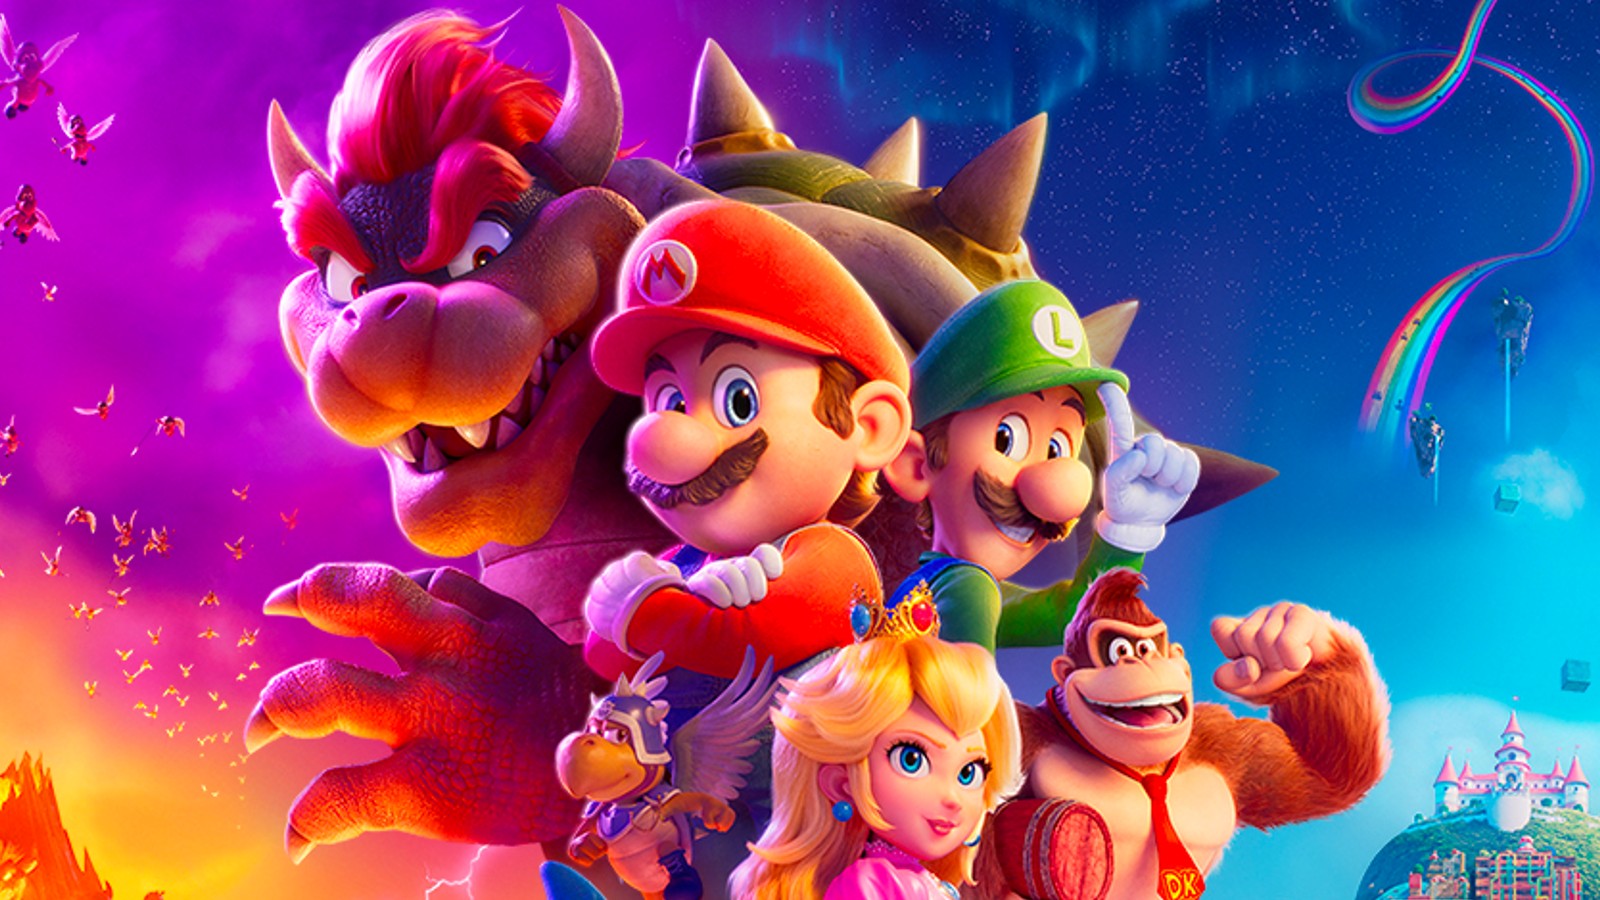 Il poster per il film di Super Mario Bros